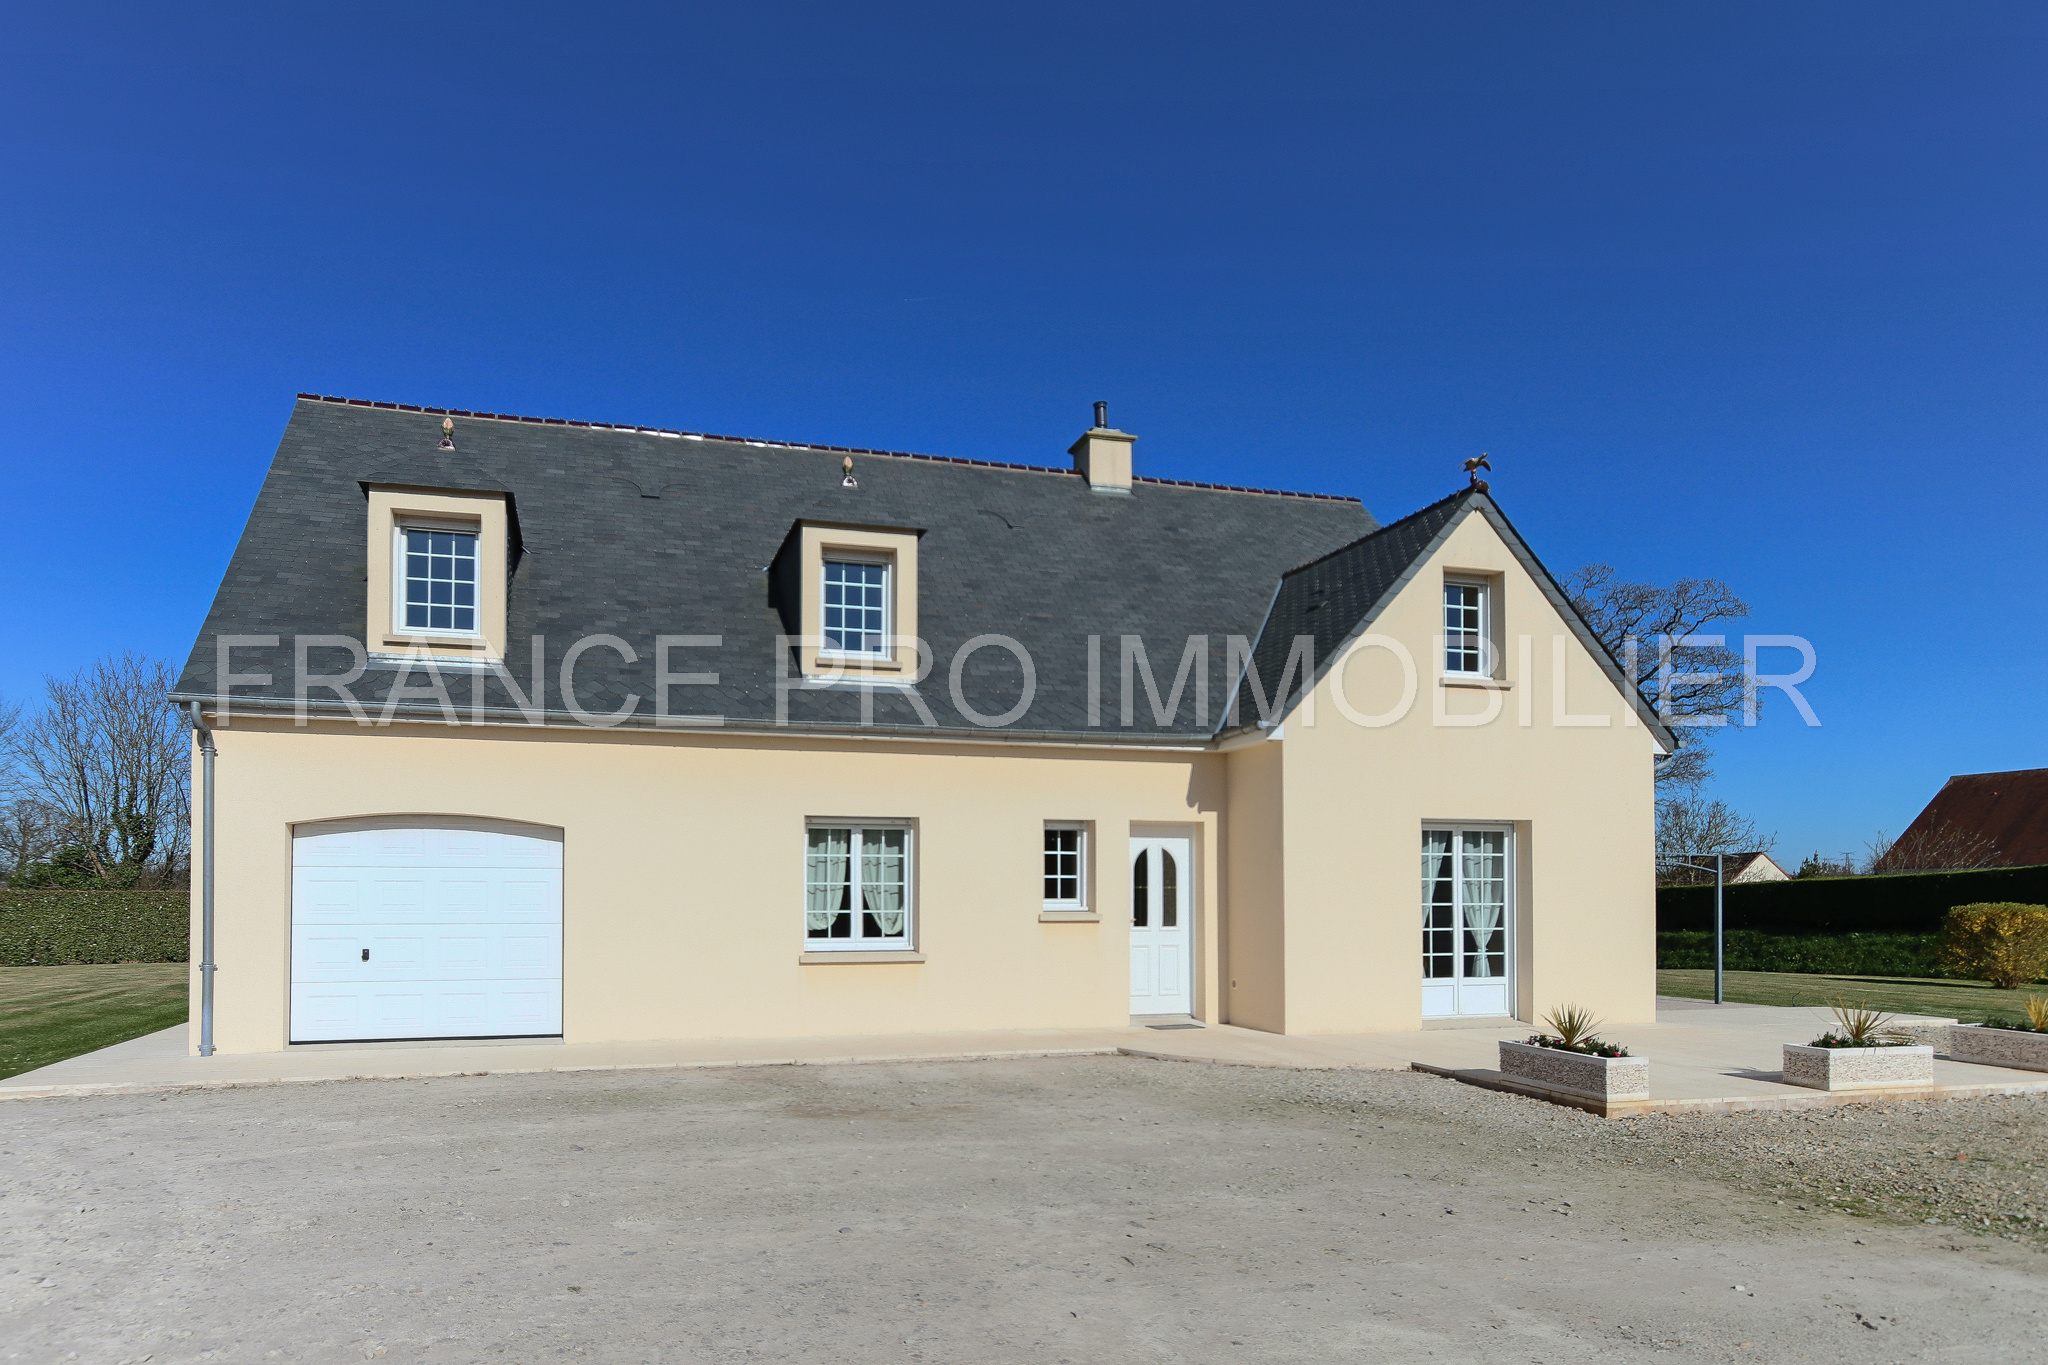 Vente Maison 149m² 6 Pièces à Rauville-la-Bigot (50260) - France Pro Immobilier